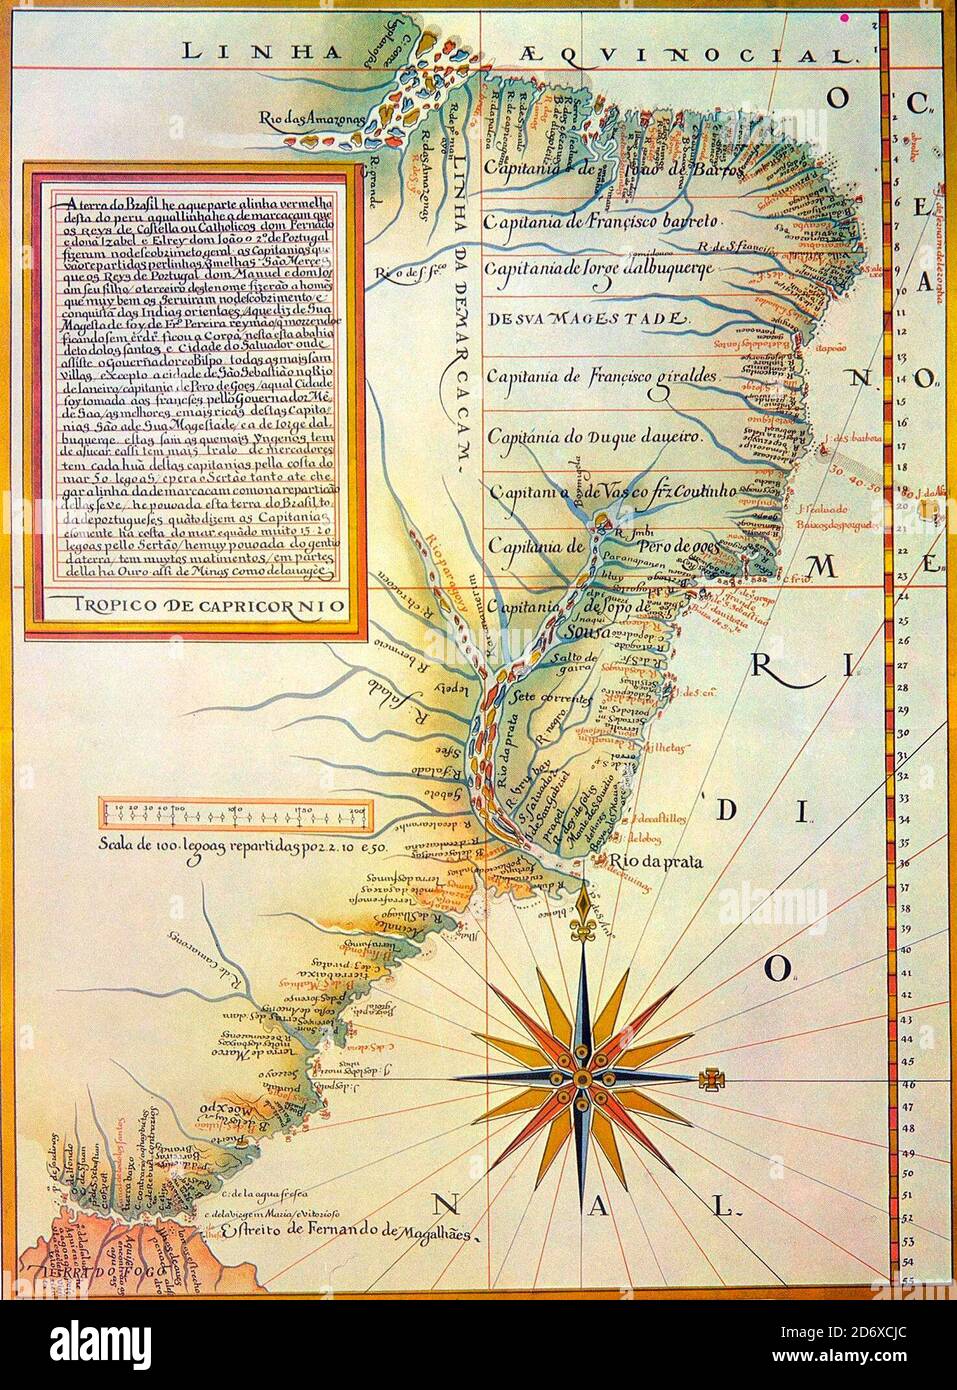 Karte von Luis Teixeira (um 1574) mit der Teilung Portugals in Captaincies. Die Tordesillas-Linie wird um zehn Grad weiter nach Westen verschoben Stockfoto